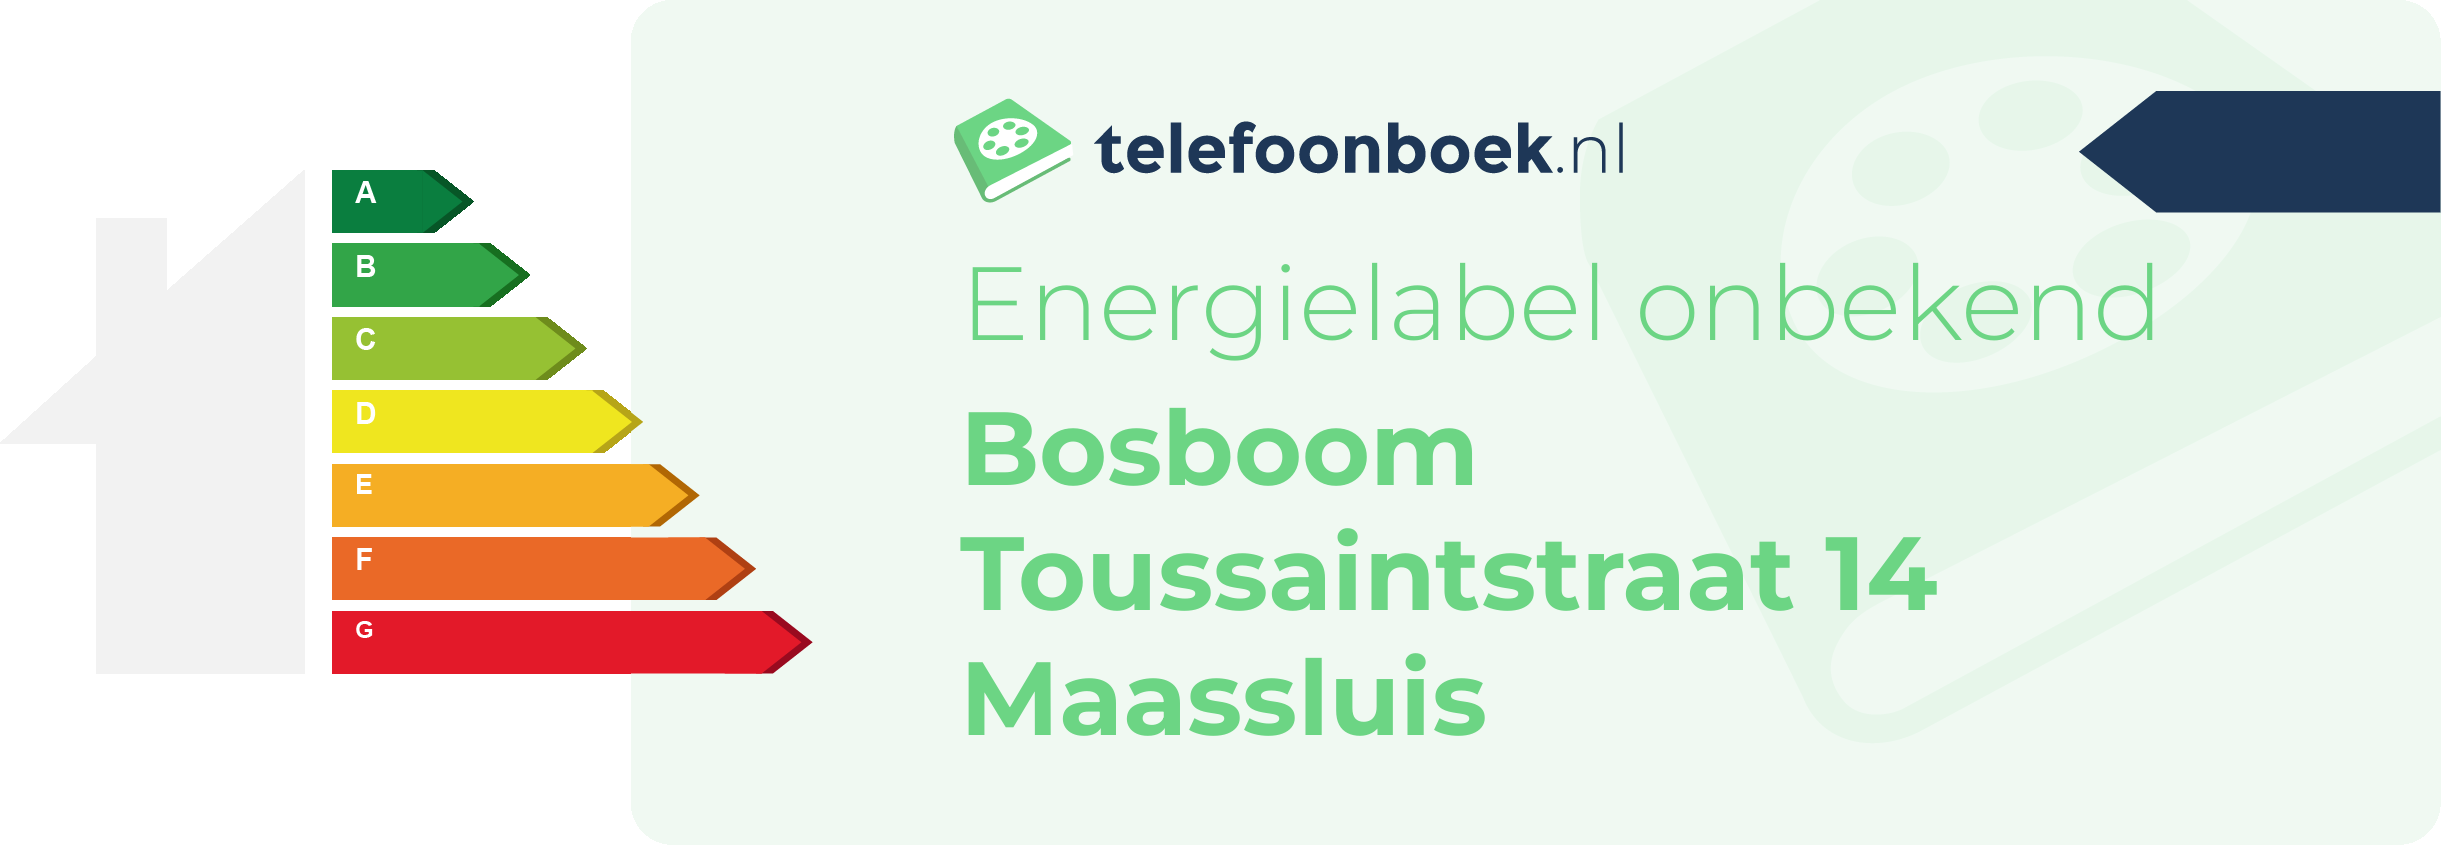 Energielabel Bosboom Toussaintstraat 14 Maassluis